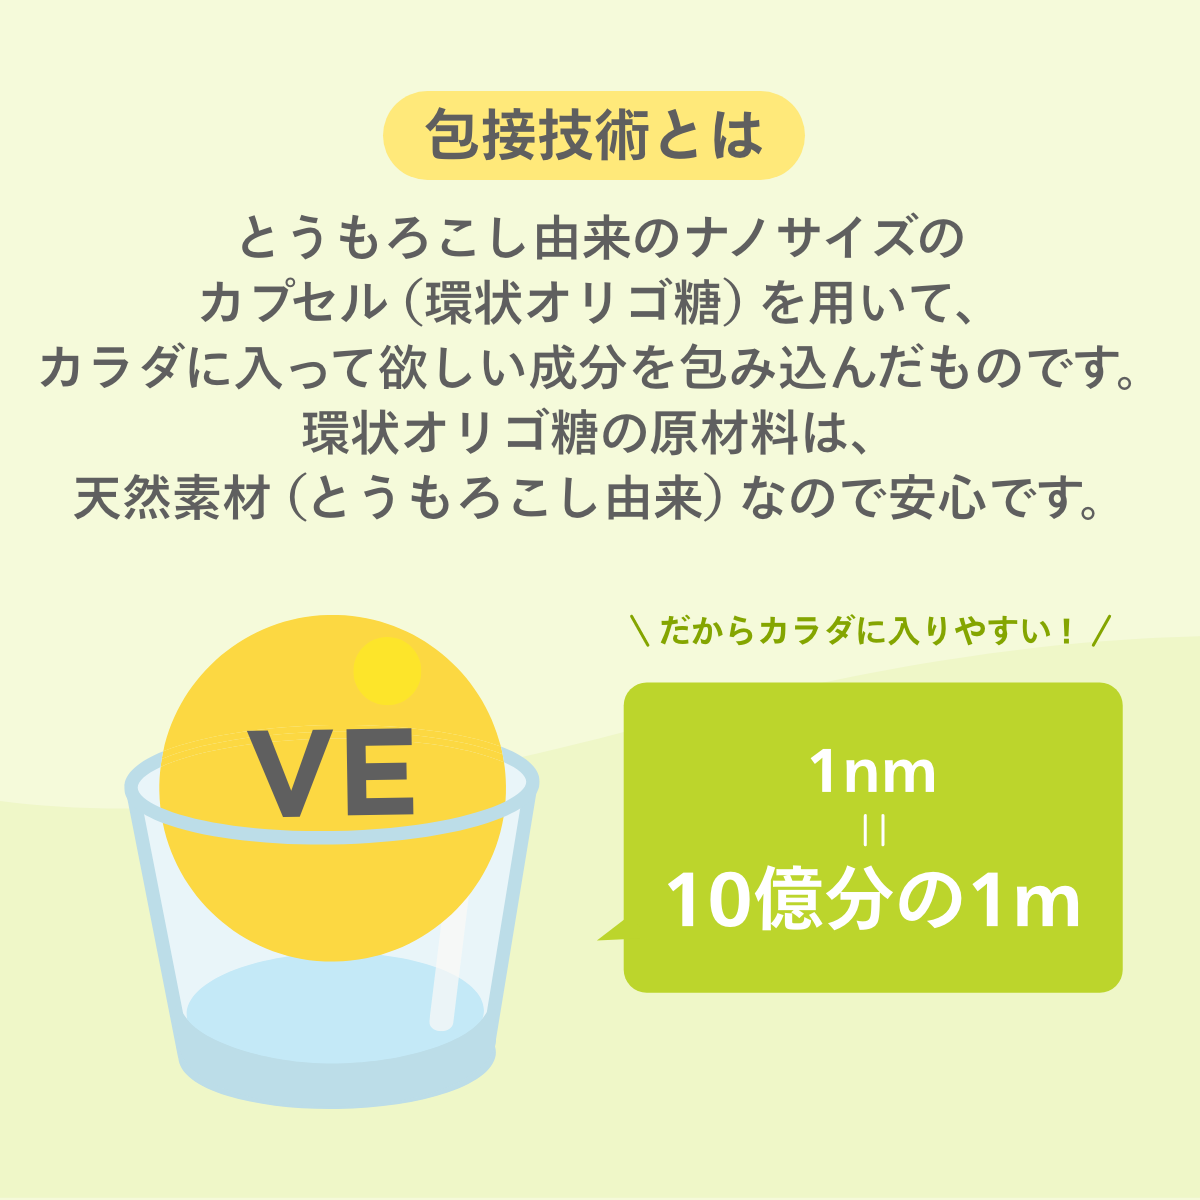 me:vision マルチビタミン＋CoQ10サプリメント